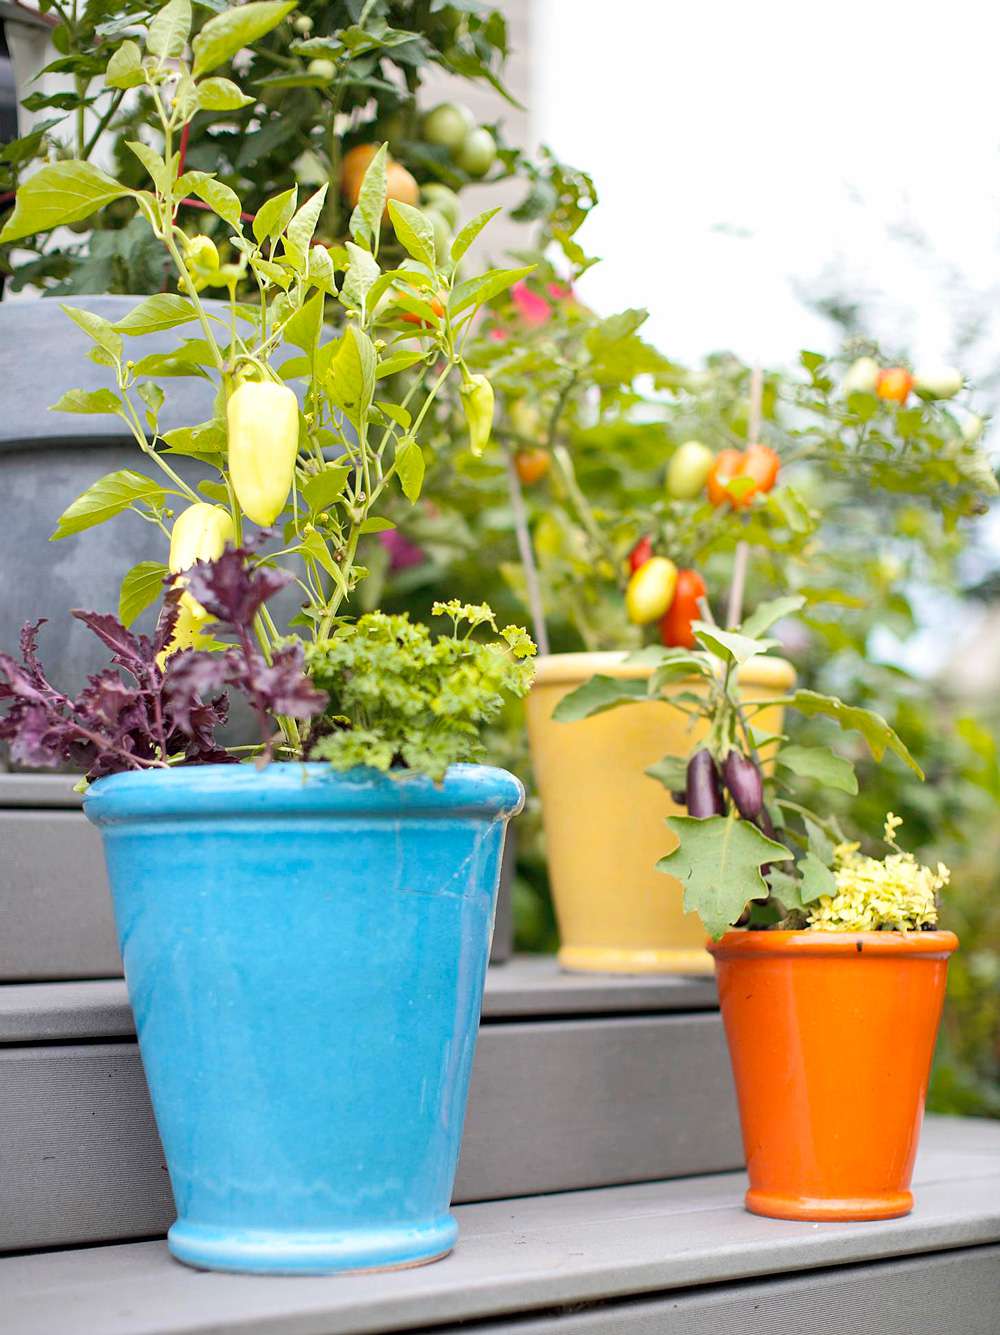 How To Start A Vegetable Garden In Pots - coneixermallorcafotos